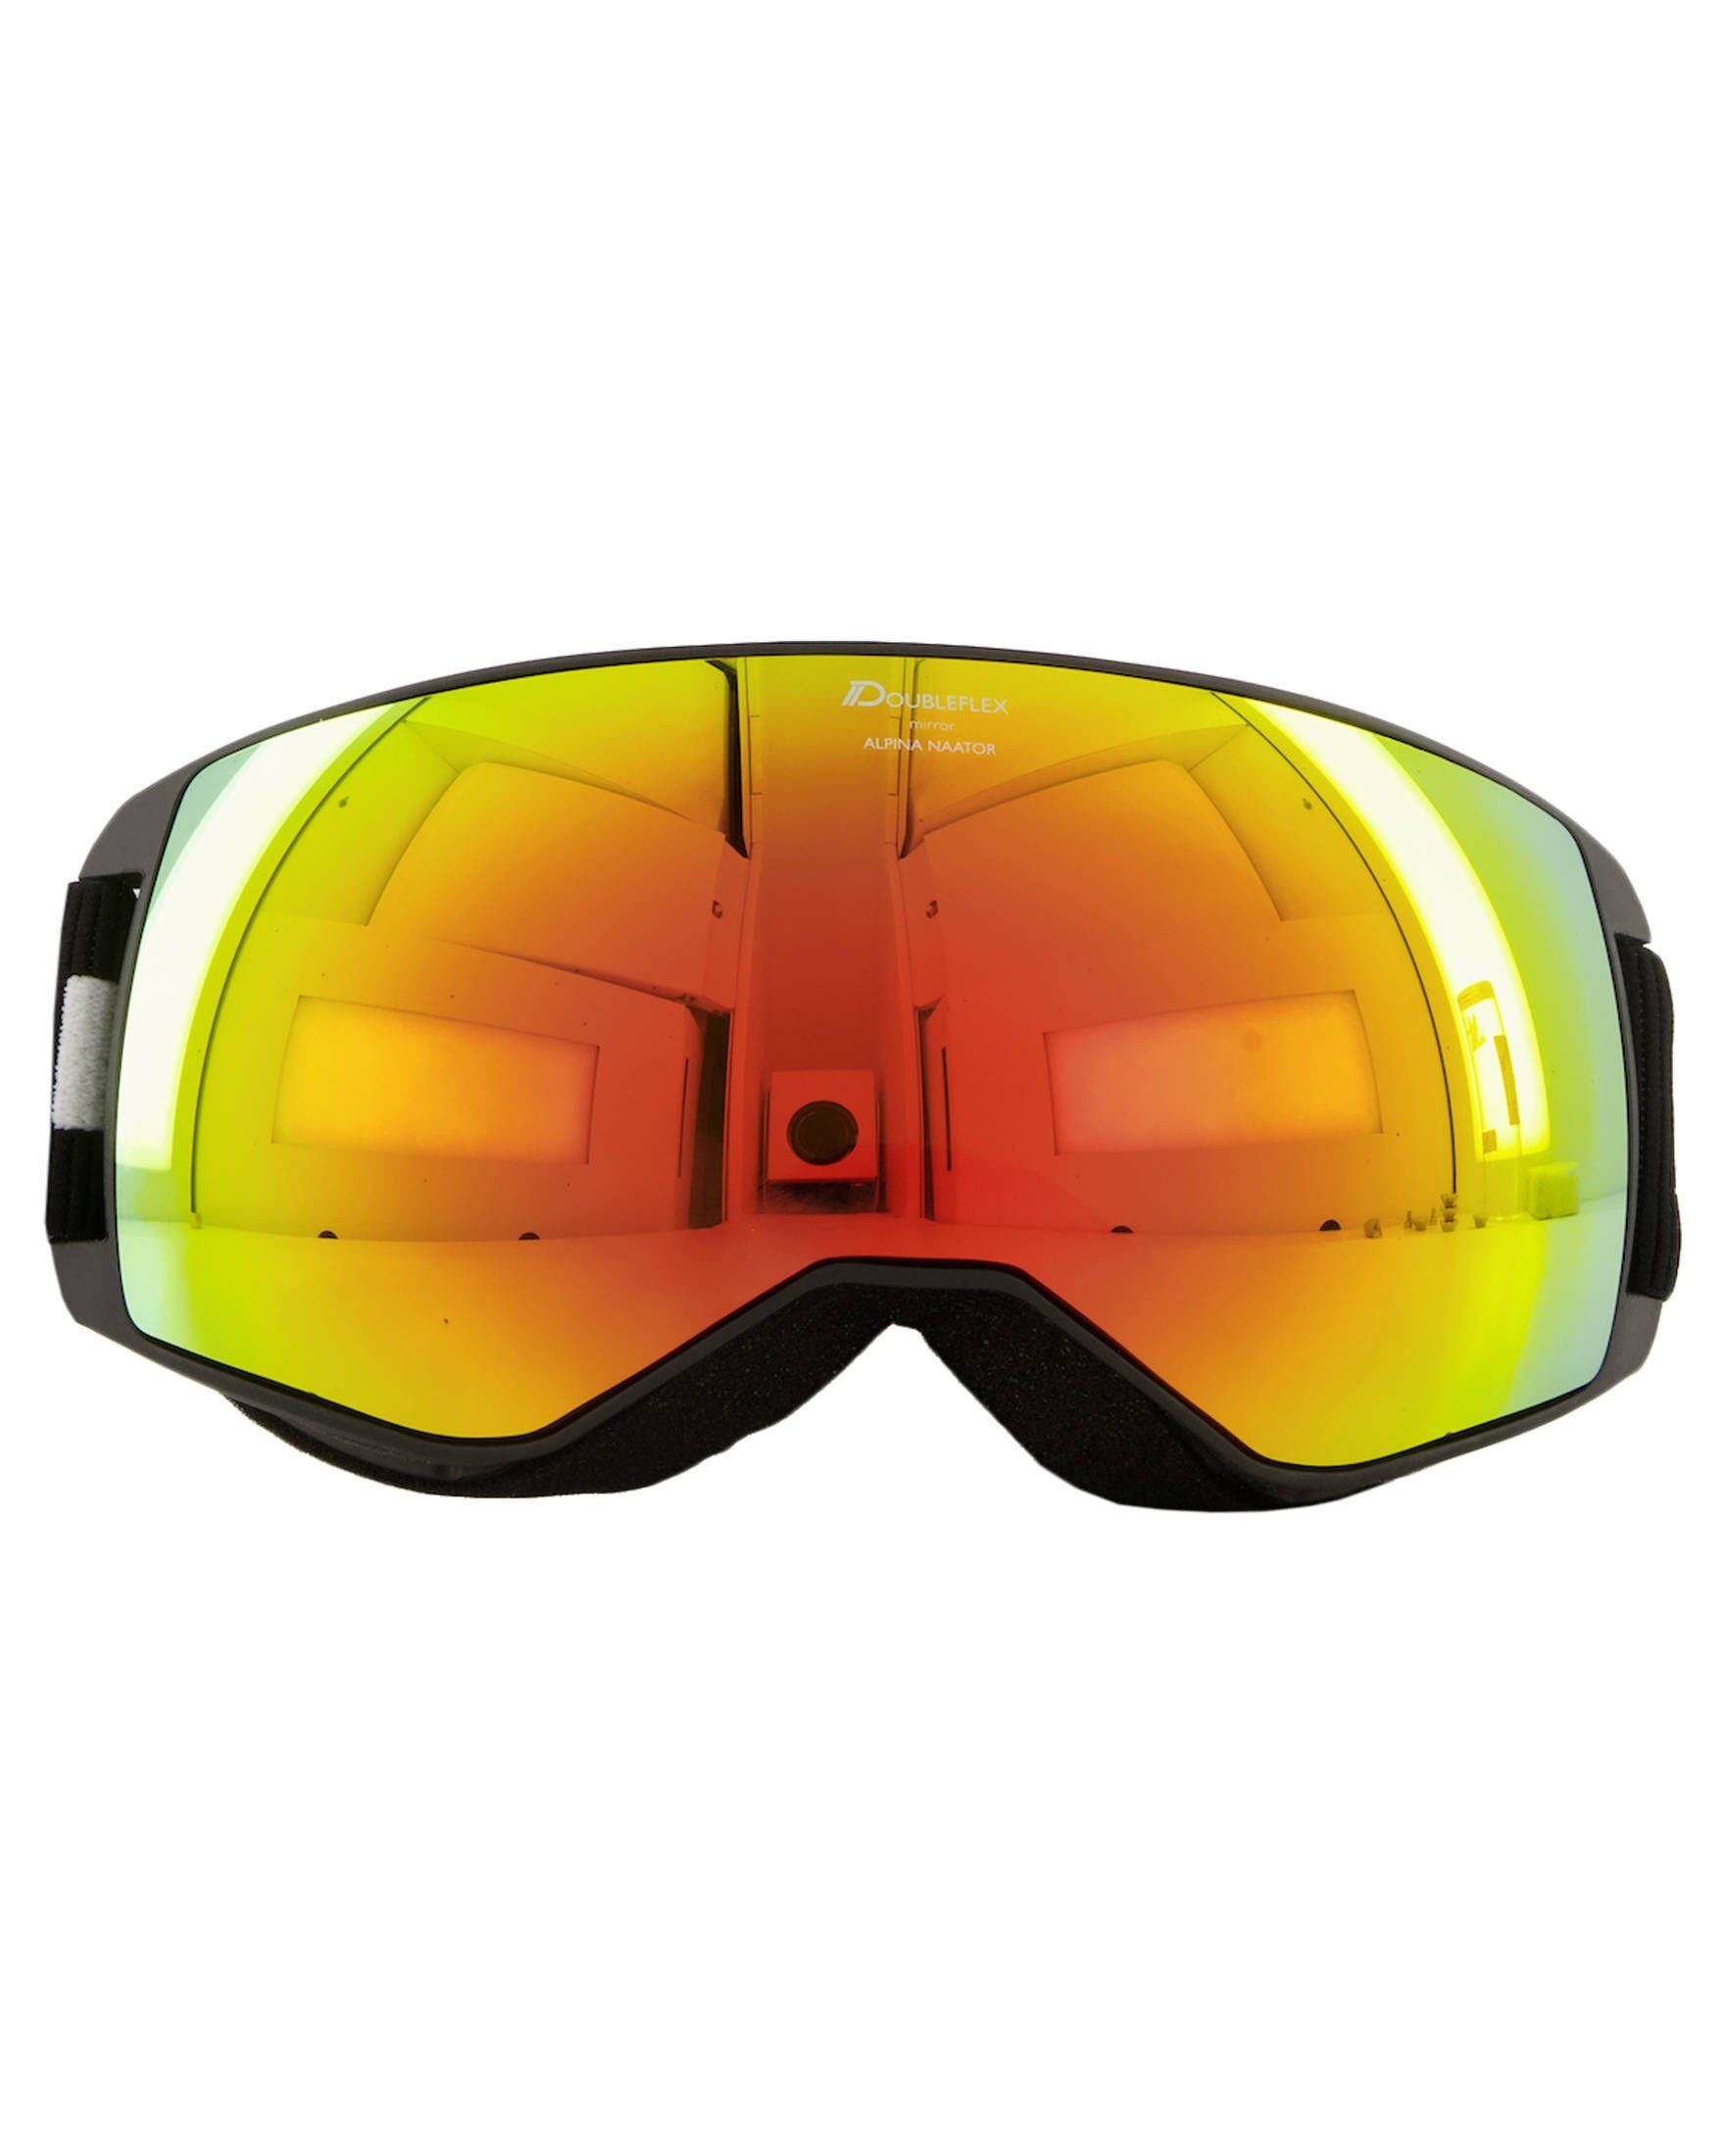 Skibrille Sports Ski- und schwarz/orange (704) Snowboardbrille NAATOR Alpina